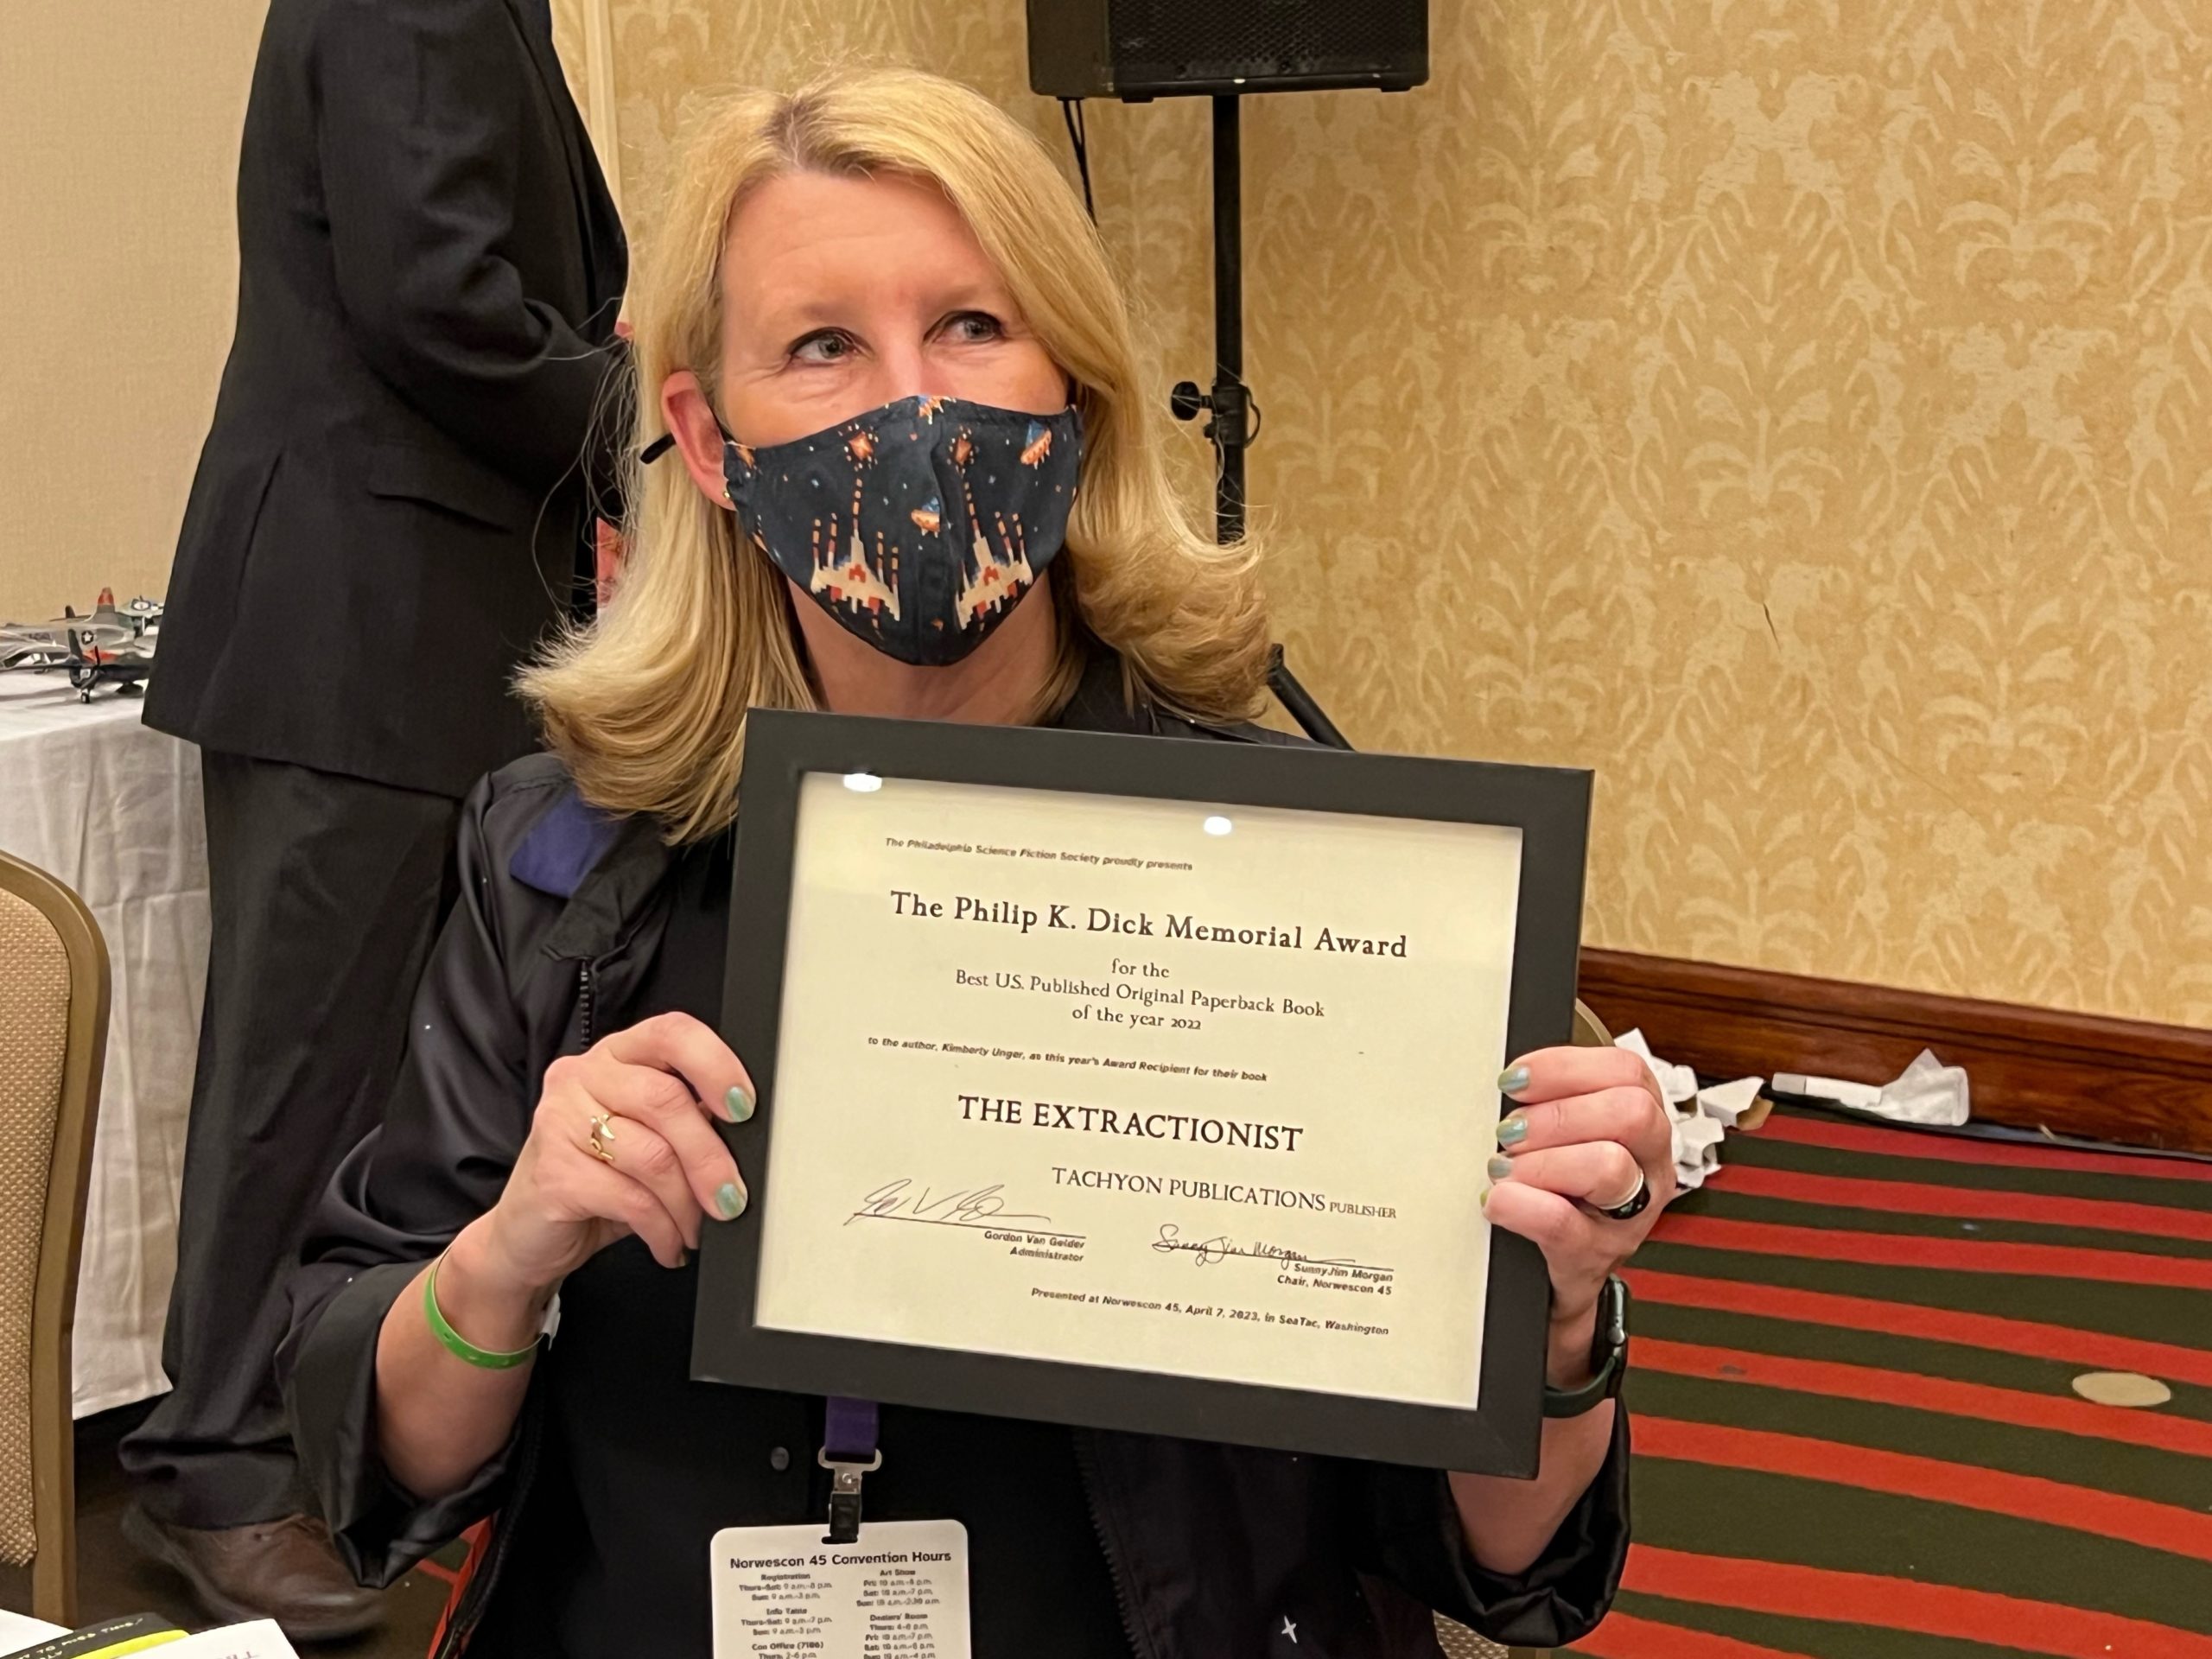 Award winner Kimberly Unger holding her award certificate.